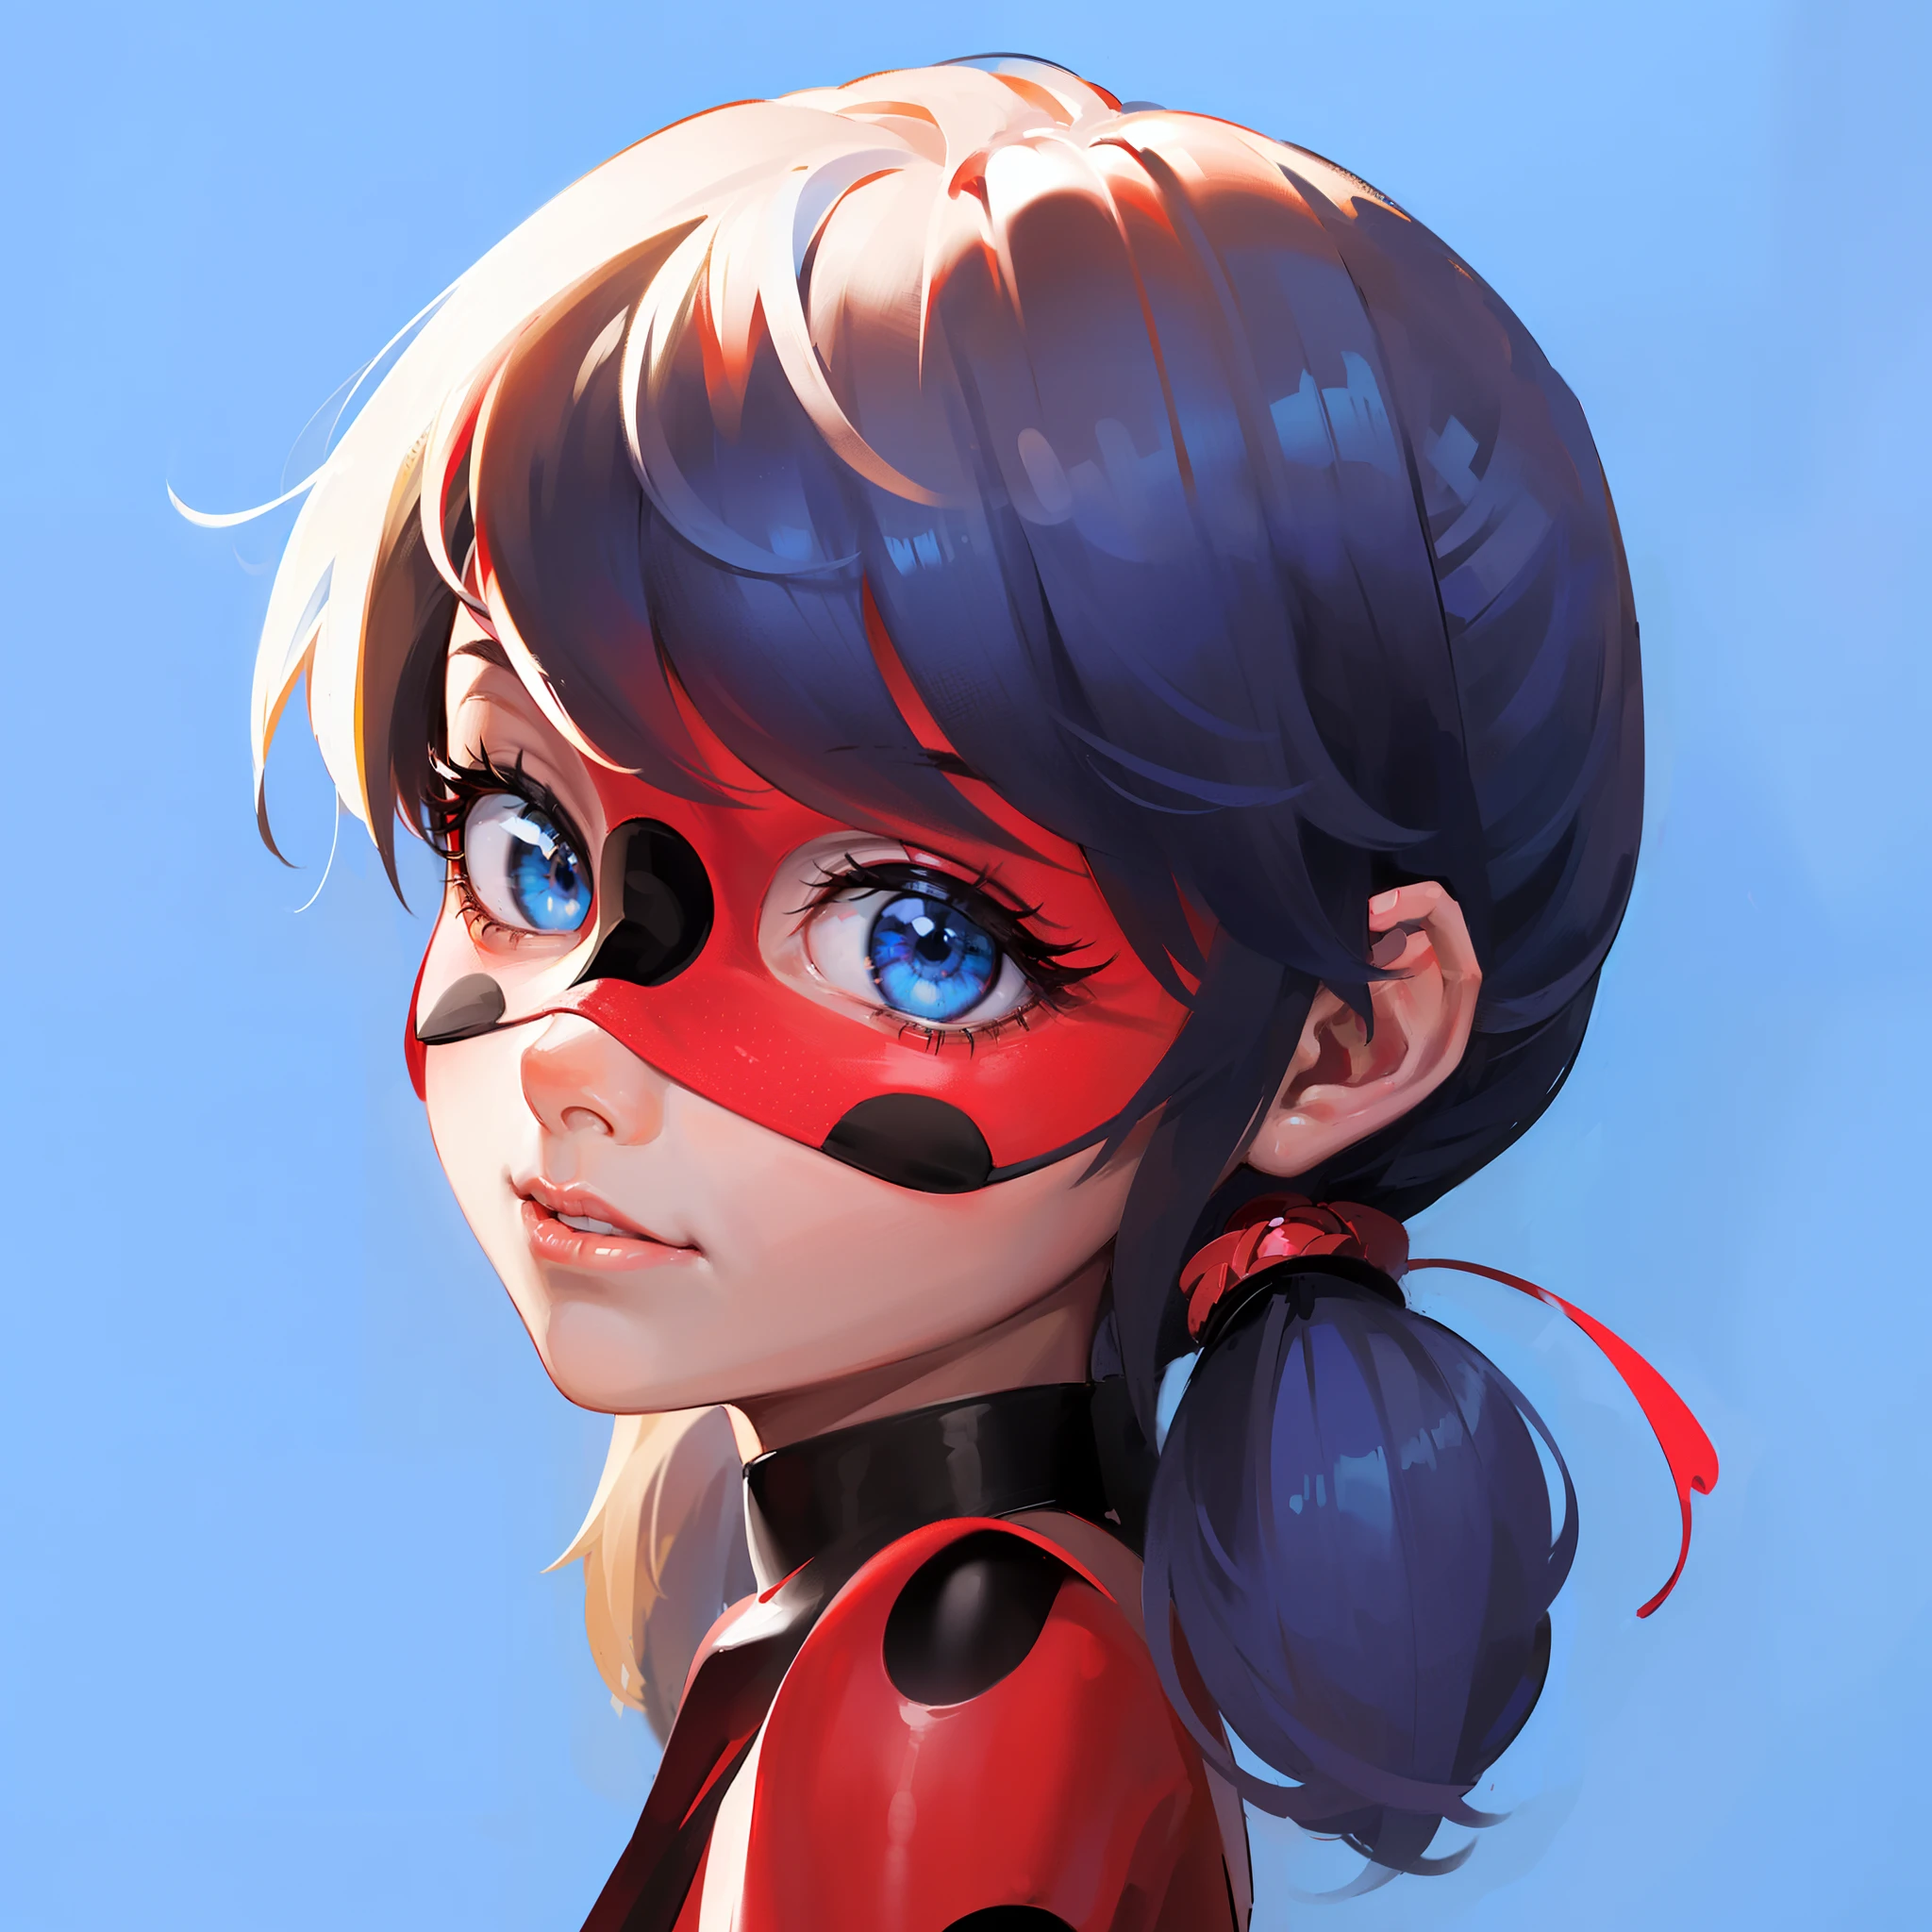 (최고의 품질, 슈퍼 디테일, 생생한 색상, 풍부한 색상,Marinette라는 소녀 1명，자세가 아름답다, (빨간색 배경 검은색 원 스팟 아이 마스크), (빨간색 배경 라운드 검은 점 꽉), 귀여운 소녀, 그녀는 카메라를 보고 있다,파란 머리 더블 말꼬리,(파란 눈 같은 보석: 1.3), 인기 있는,8K，HD